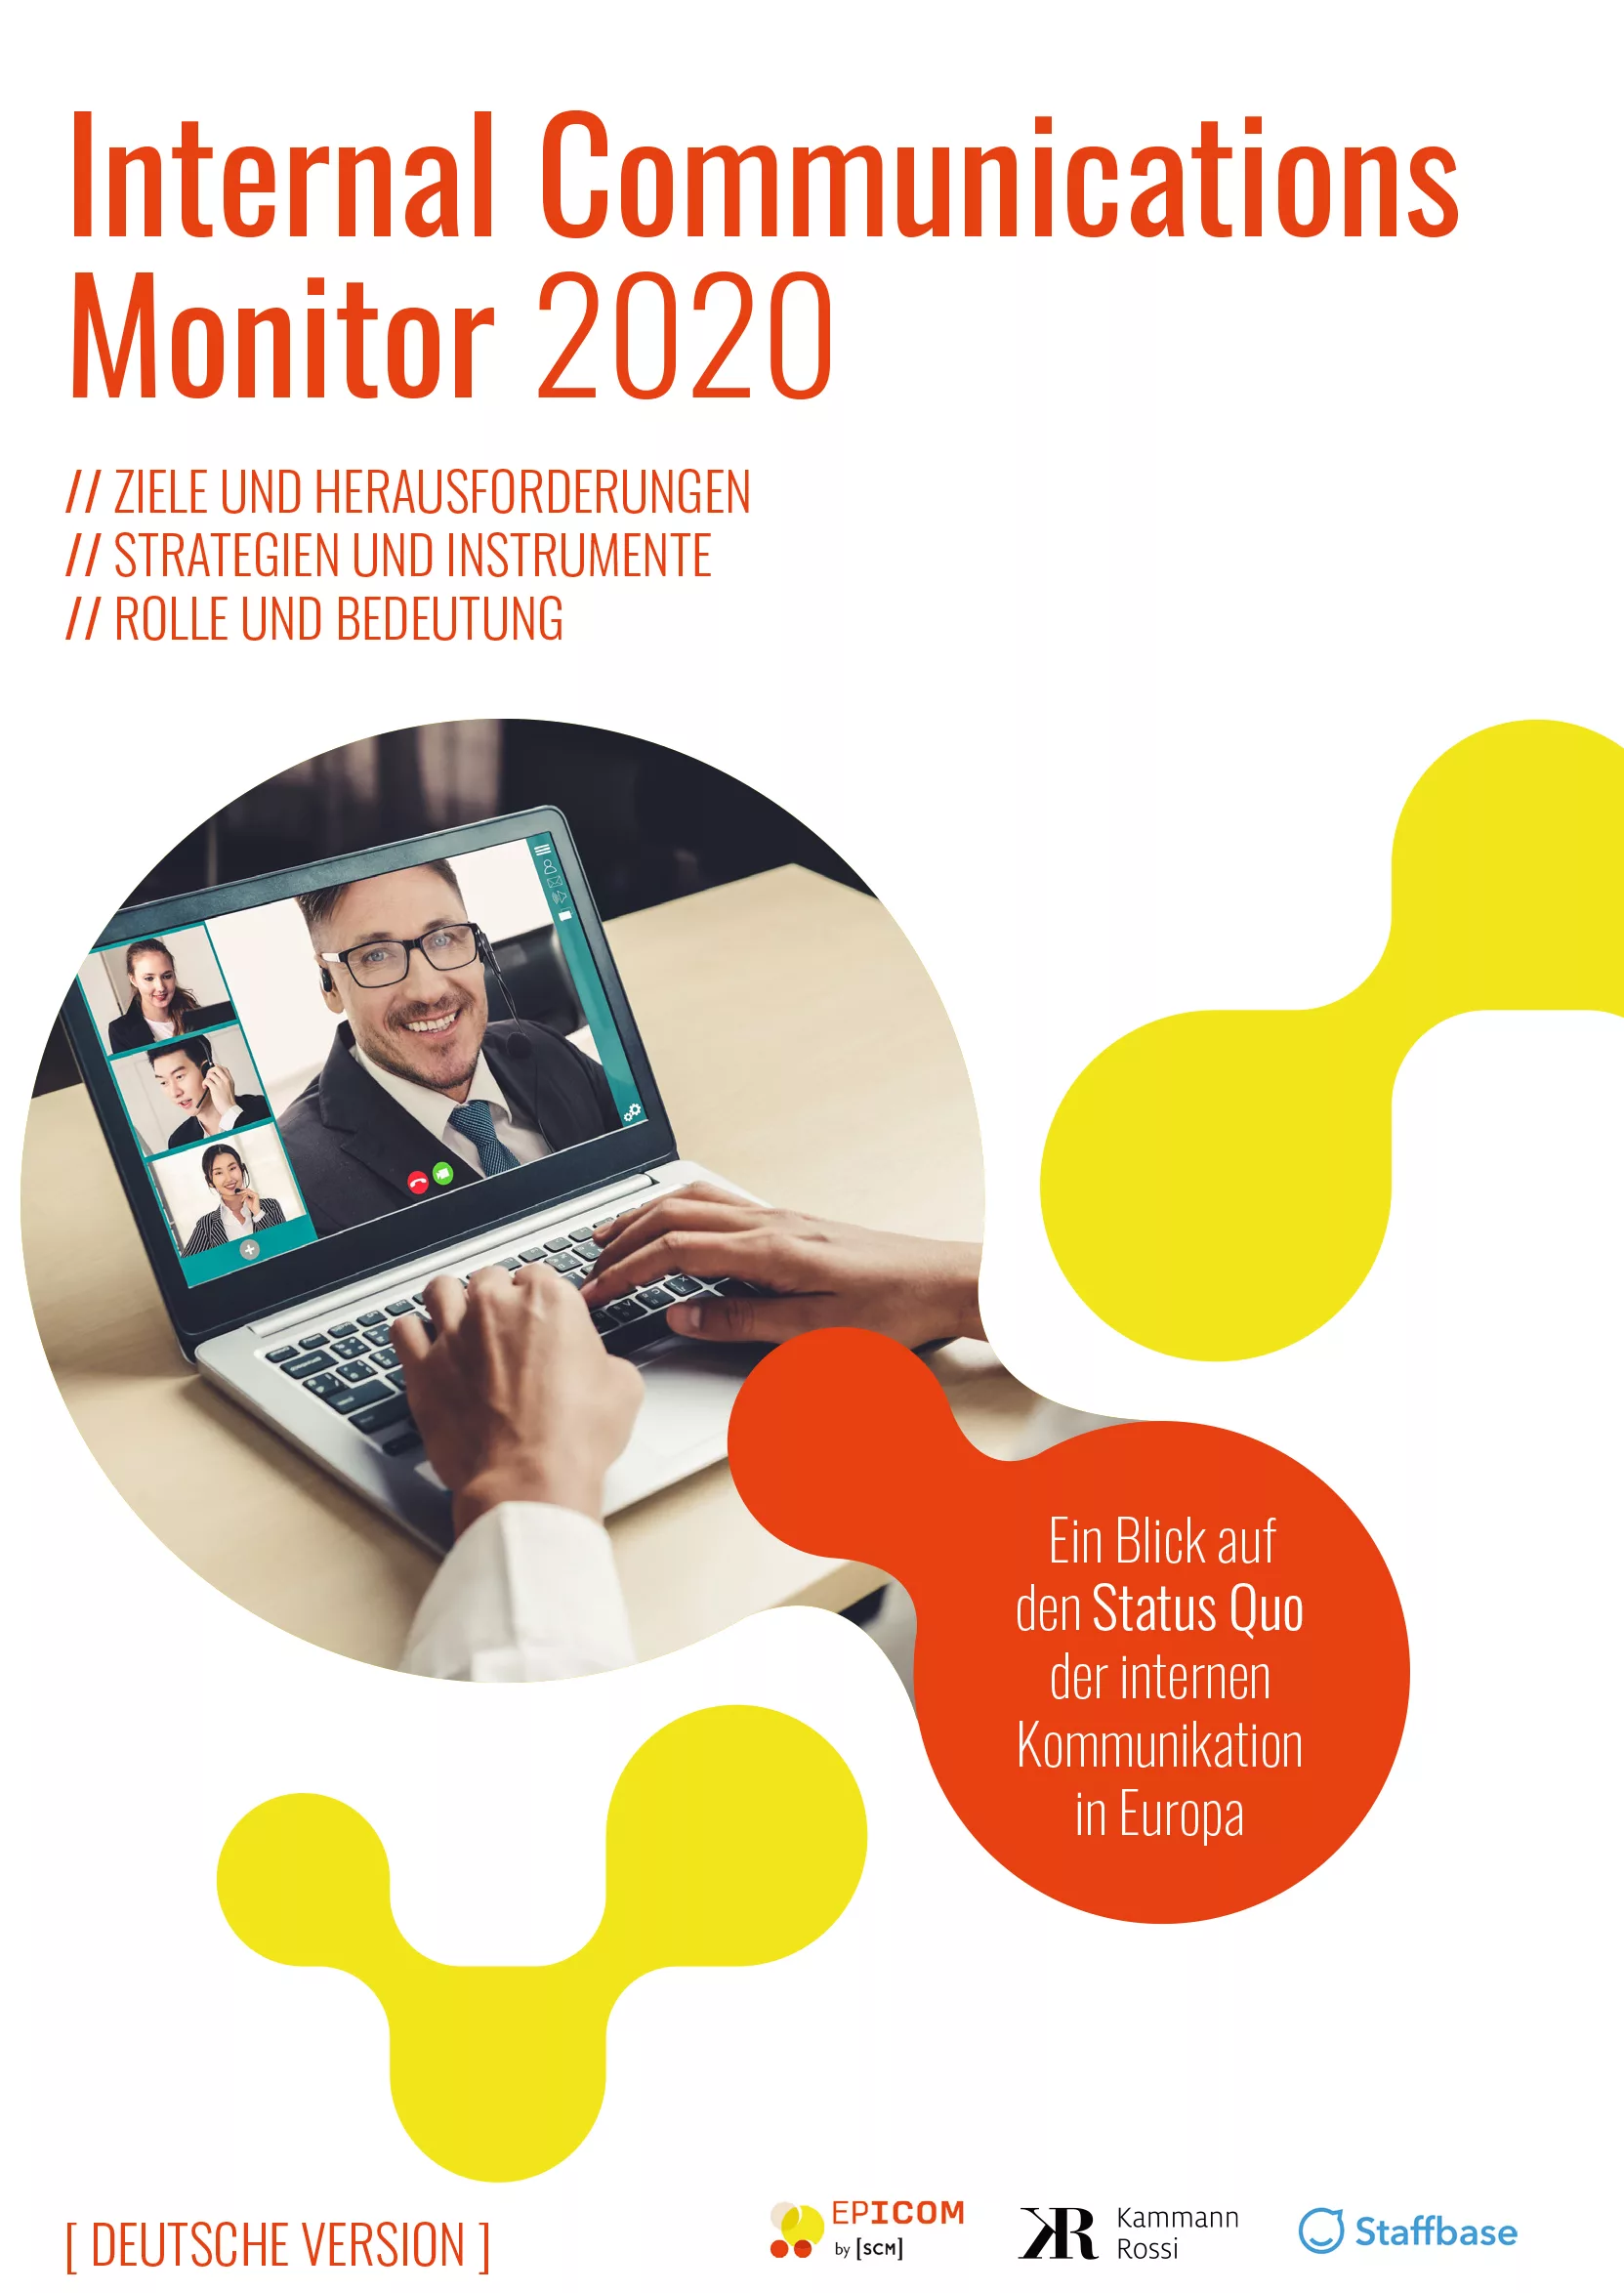 Internal Communications Monitor 2020